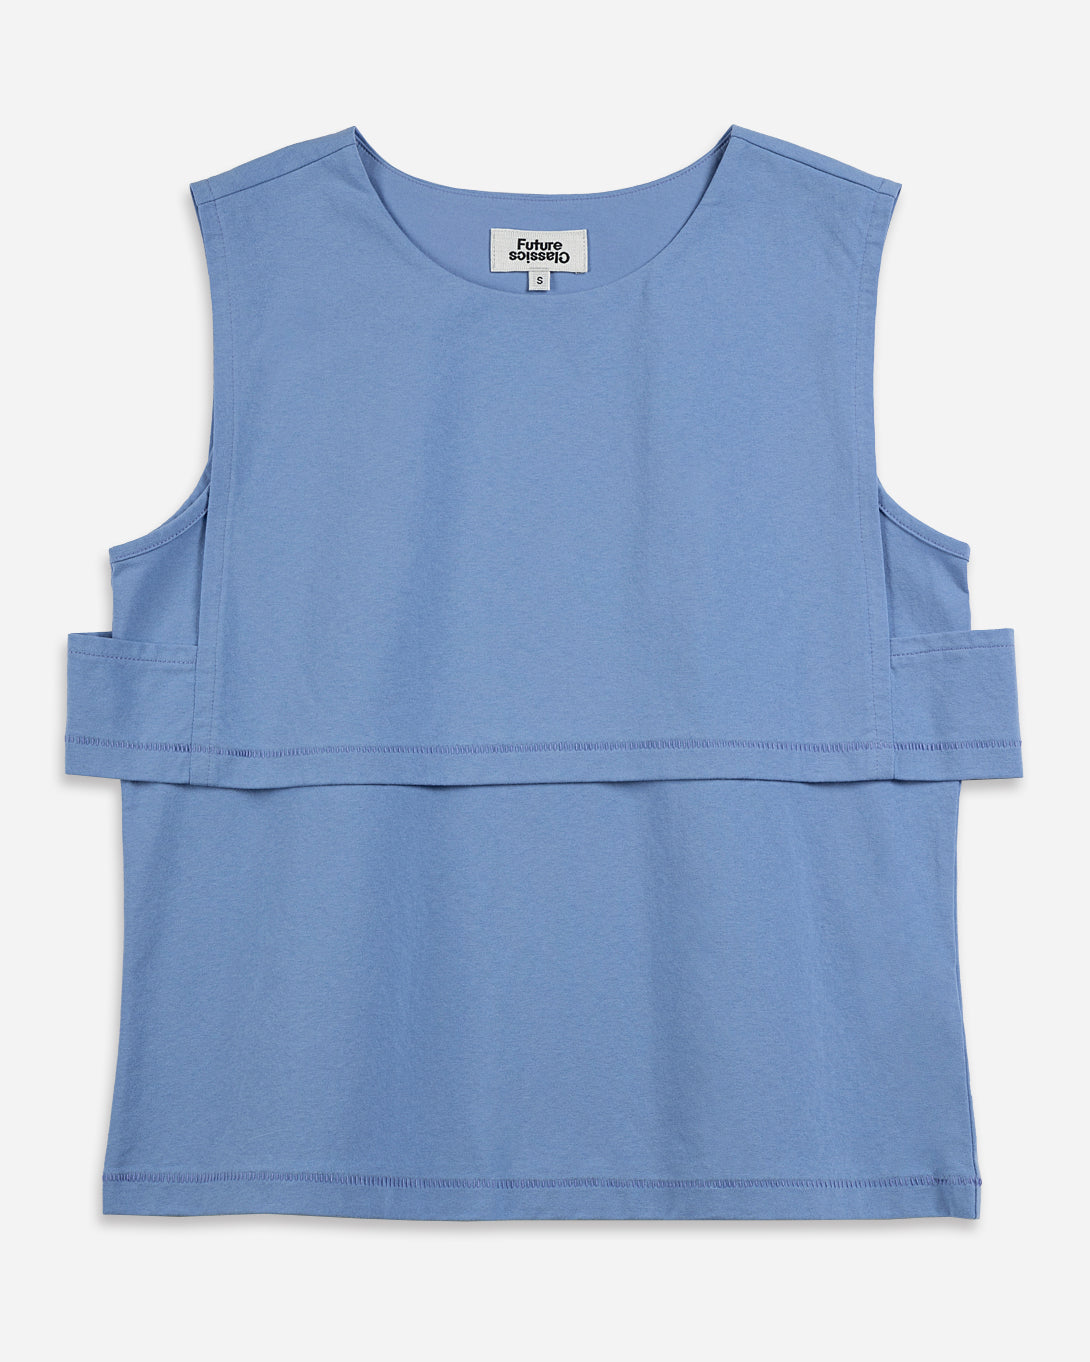 Little Boy Blue Double Layer Tank Womens Sleeveless Summer Shirt